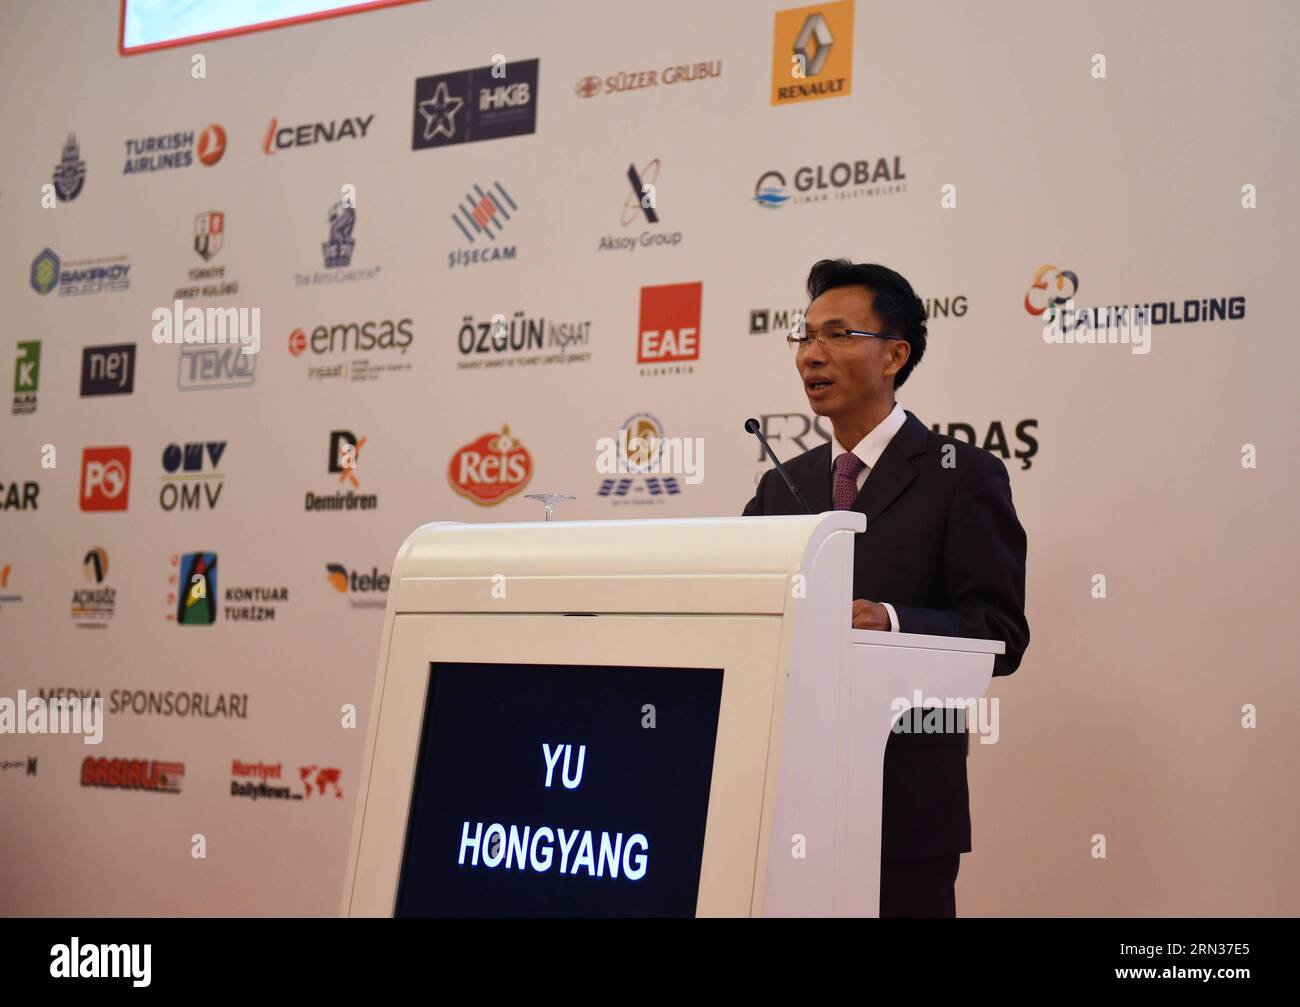 ISTANBUL, 8,2015 avril -- l'ambassadeur de Chine en Turquie, Yu Hongyang, prononce un discours au forum de la route de la soie du 18e Sommet de l'économie eurasienne à Istanbul, Turquie, le 8 avril 2015. L'initiative de la route de la soie a été présentée comme le nouveau modèle de coopération pour le 21e siècle lors du Sommet de l'économie eurasienne à Istanbul mercredi. ) TURQUIE-ISTANBUL-SOMMET DE L'ÉCONOMIE EURASIENNE HexCanling PUBLICATIONxNOTxINxCHN Istanbul avril 8 2015 l'Ambassadeur de Chine en Turquie Yu Hong Yang prononce un discours AU Forum de la route de la soie du 18e Sommet de l'économie EURASIENNE à Istanbul Turquie avril 8 2015 l'Initiative de la route de la soie a Banque D'Images